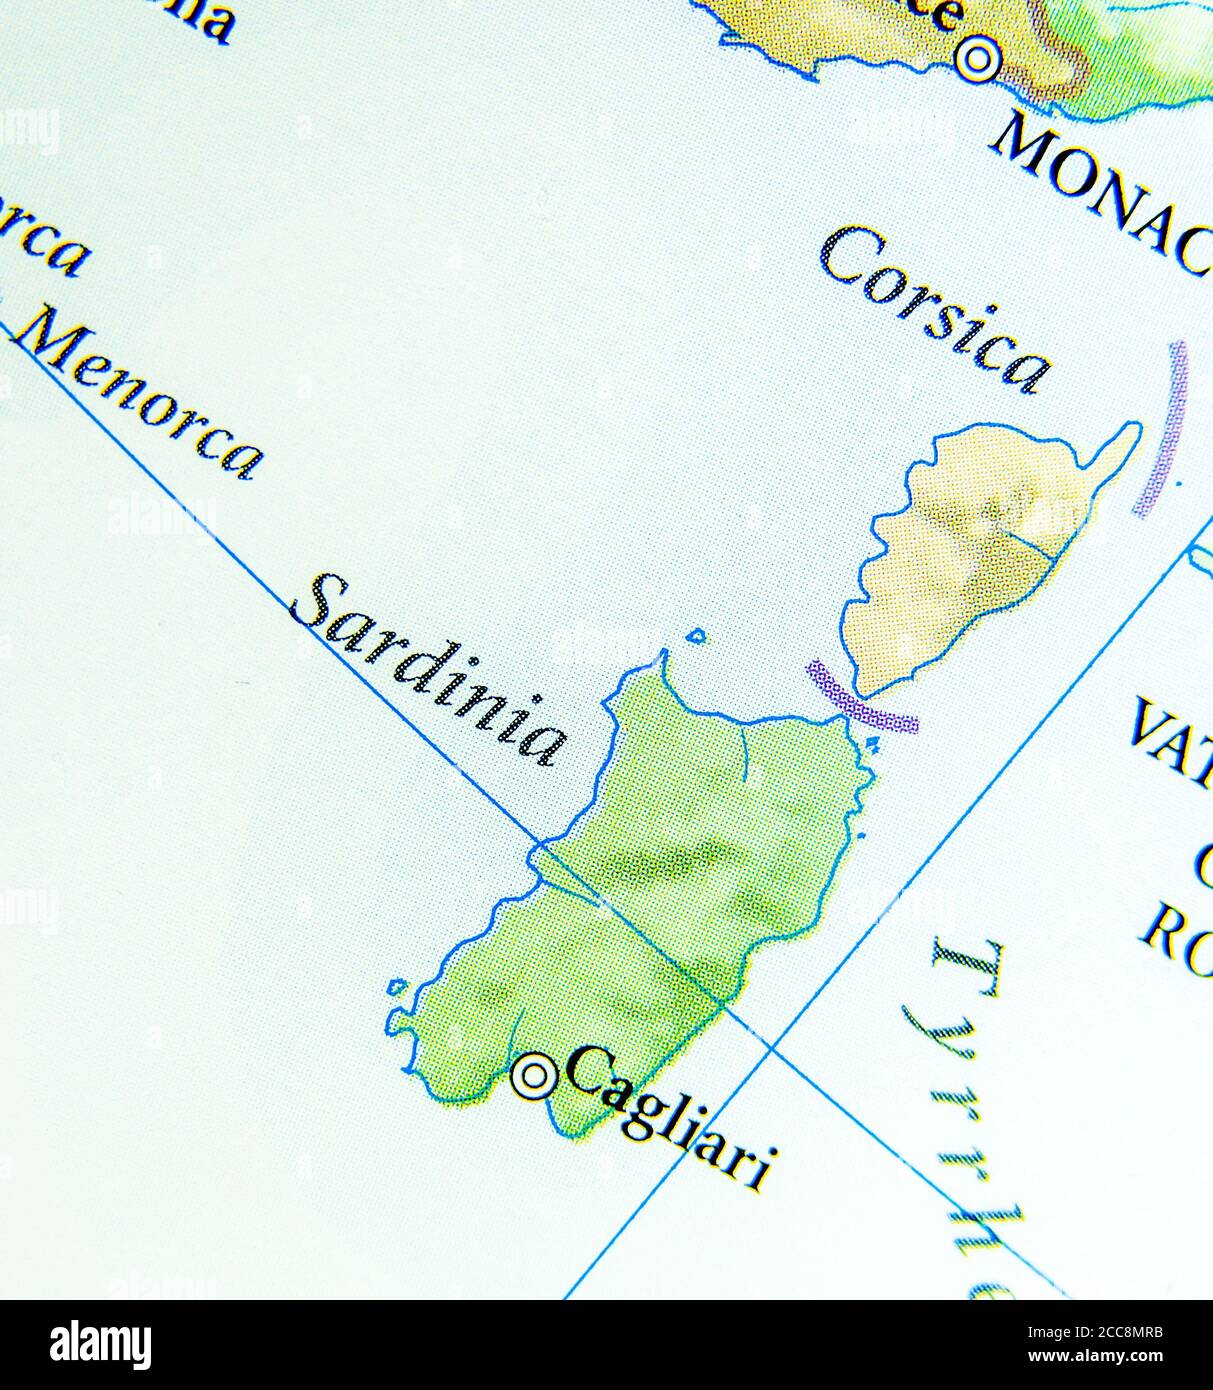 Carte géographique du pays européen Italie avec l'île de Sardaigne Banque D'Images